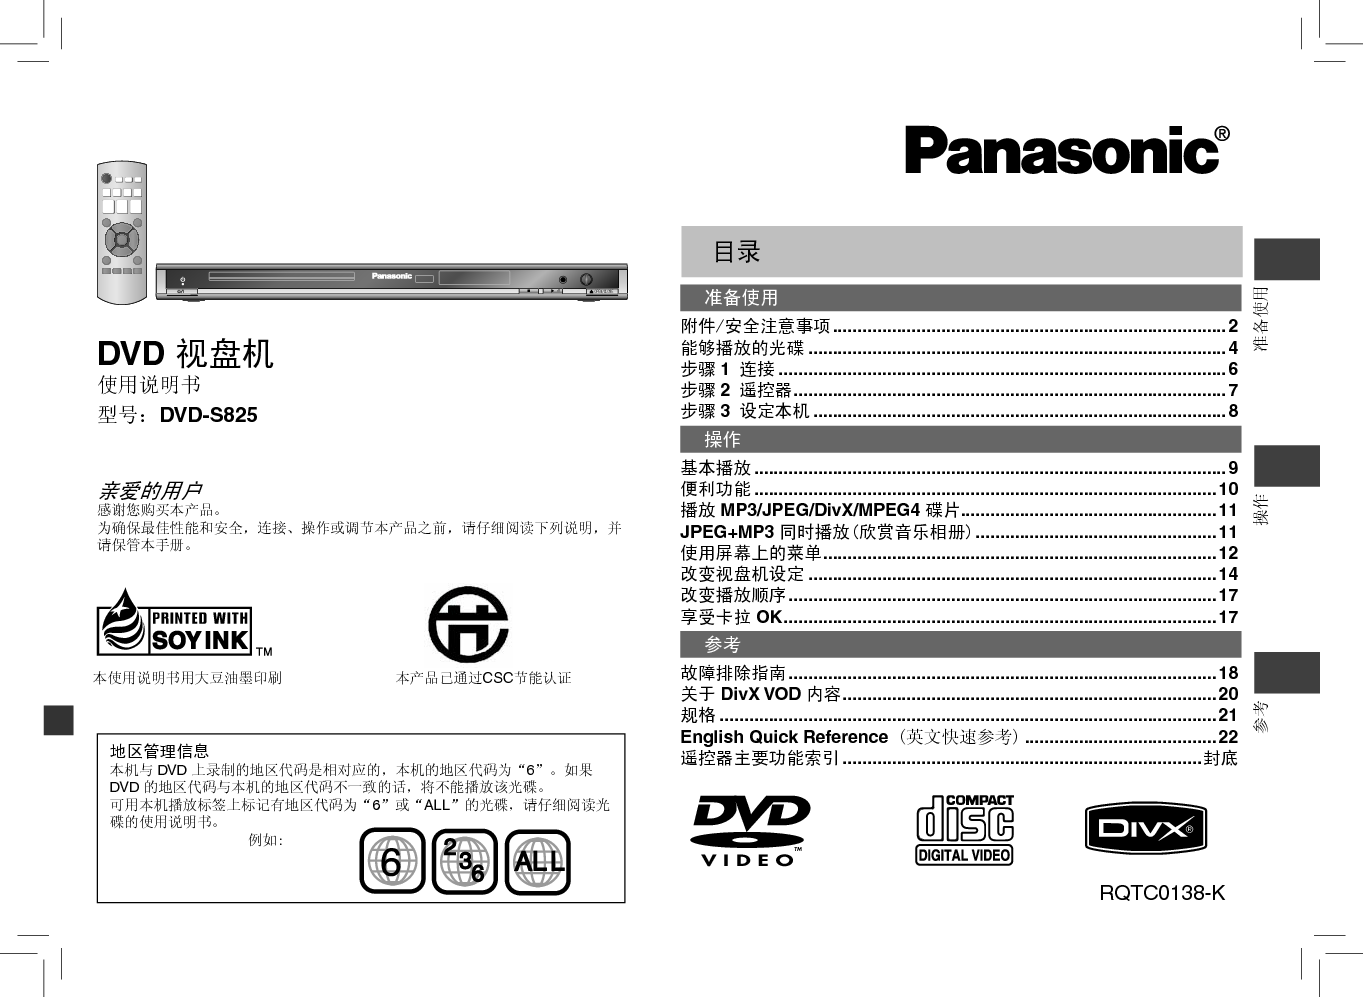 松下 Panasonic DVD-S825 说明书 封面